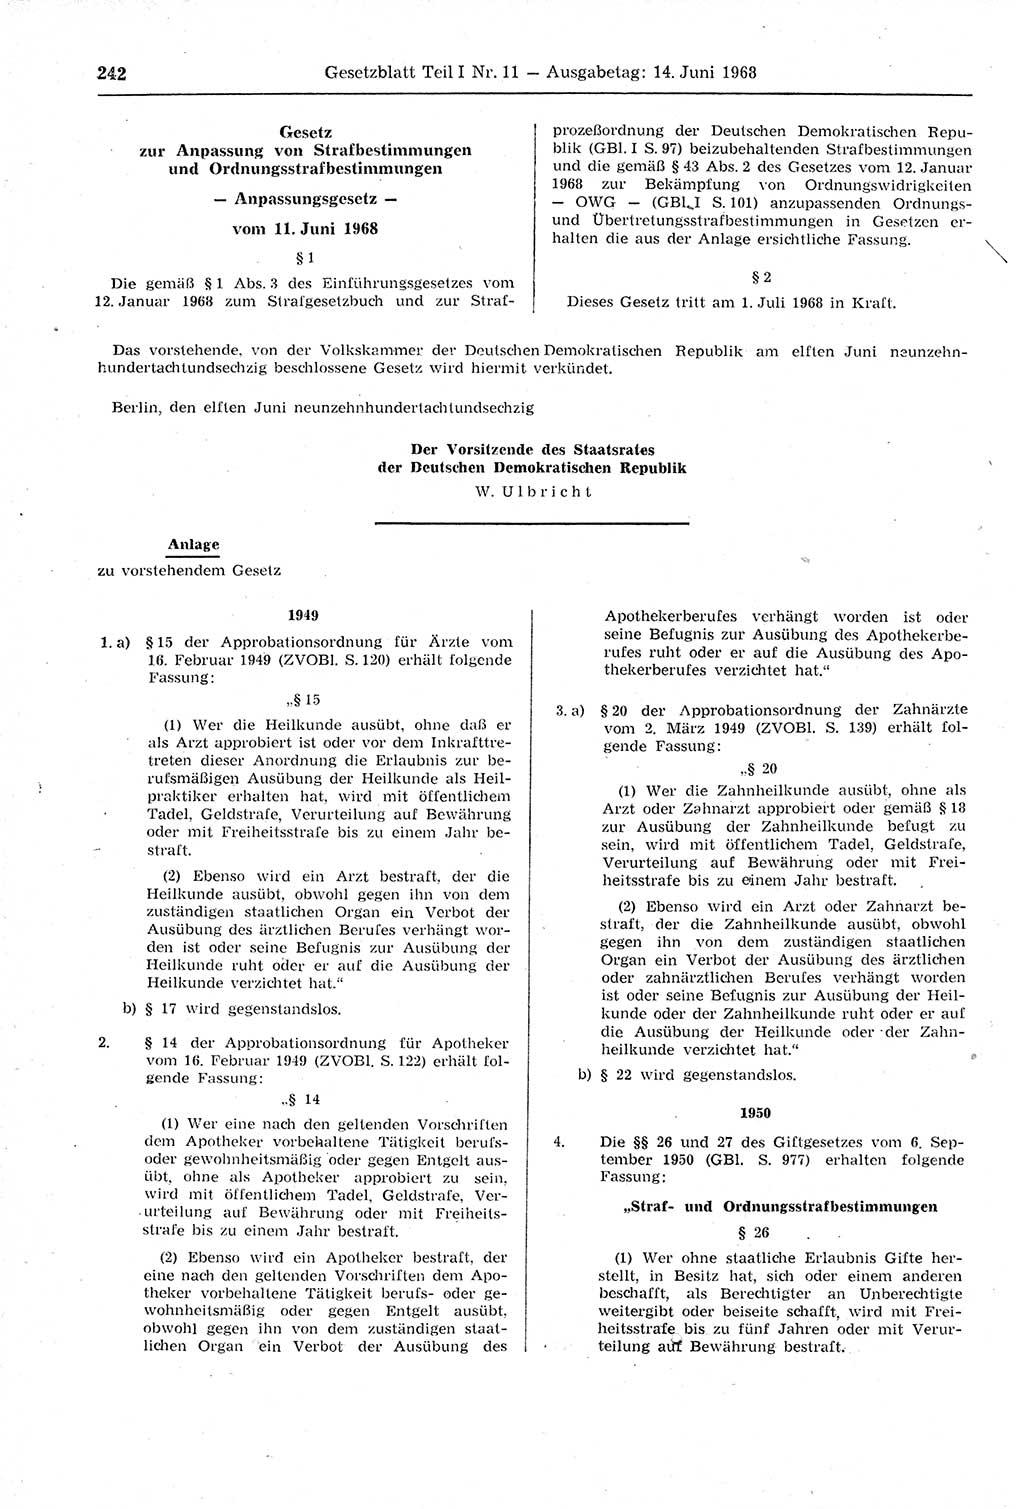 Gesetzblatt (GBl.) der Deutschen Demokratischen Republik (DDR) Teil Ⅰ 1968, Seite 242 (GBl. DDR Ⅰ 1968, S. 242)